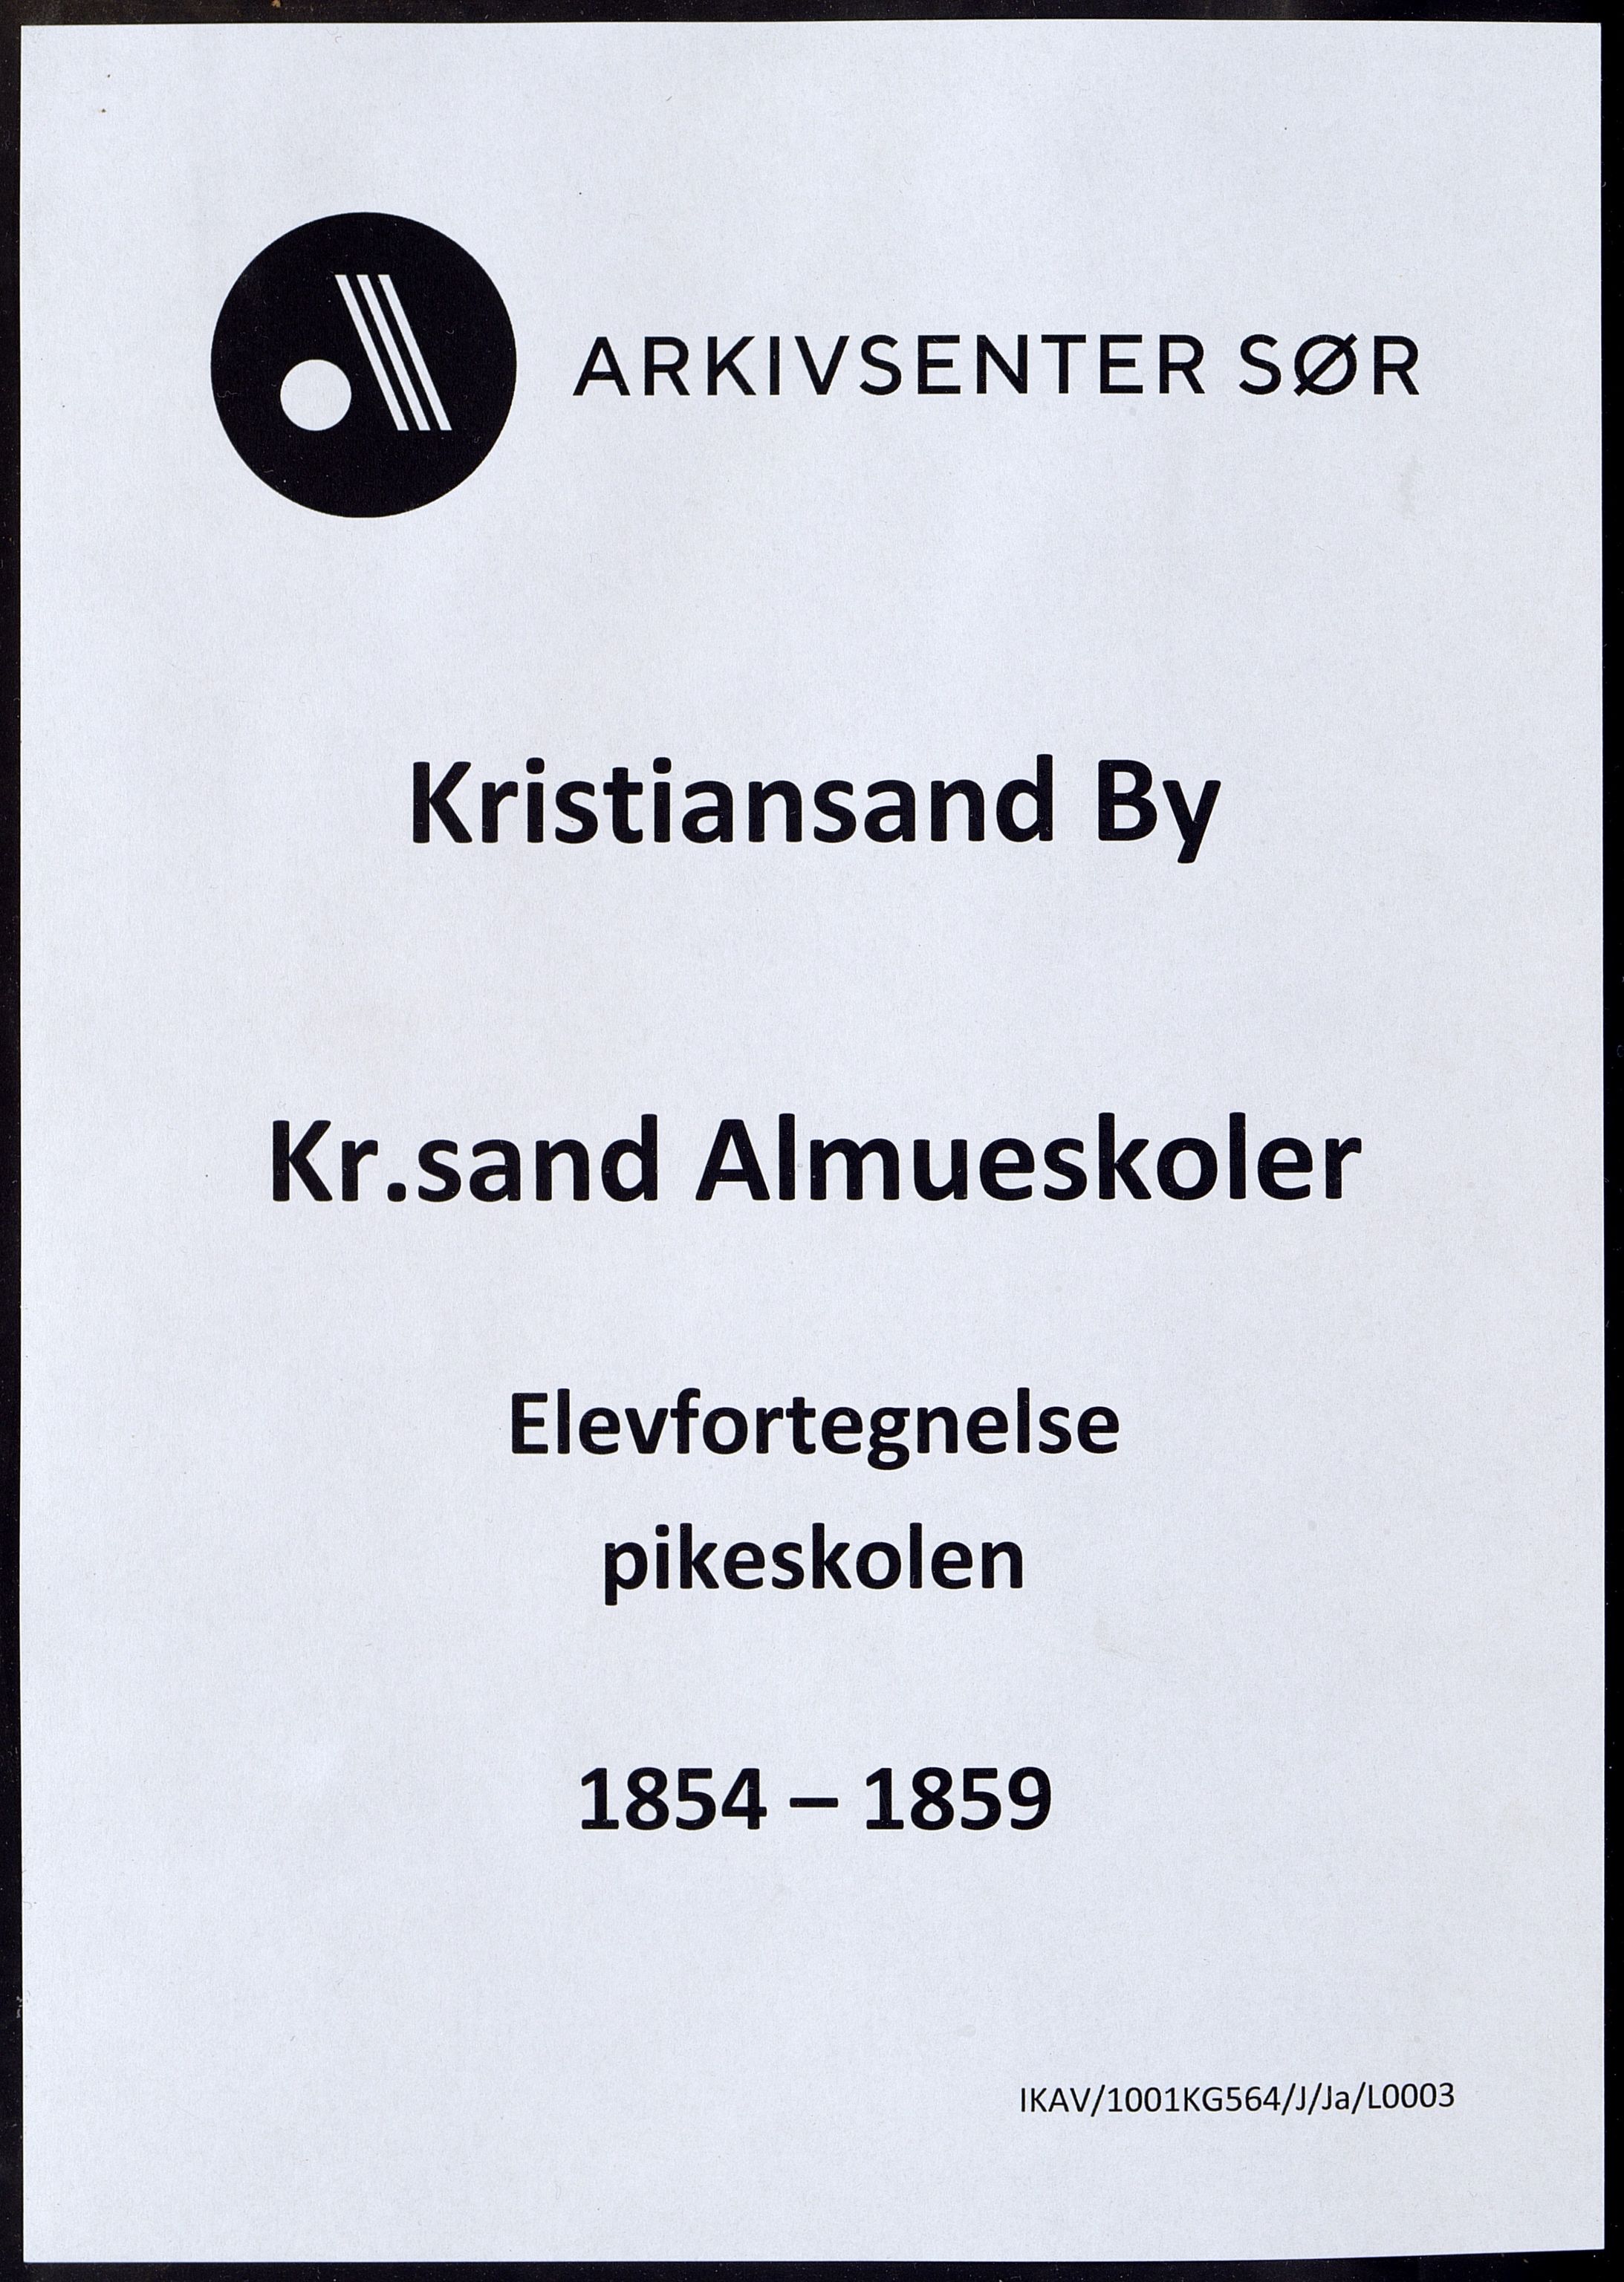 Kristiansand By - Kr. Sand Almueskoler, IKAV/1001KG564/J/Ja/L0003: Elevfortegnelse pikeskolen, 1854-1859